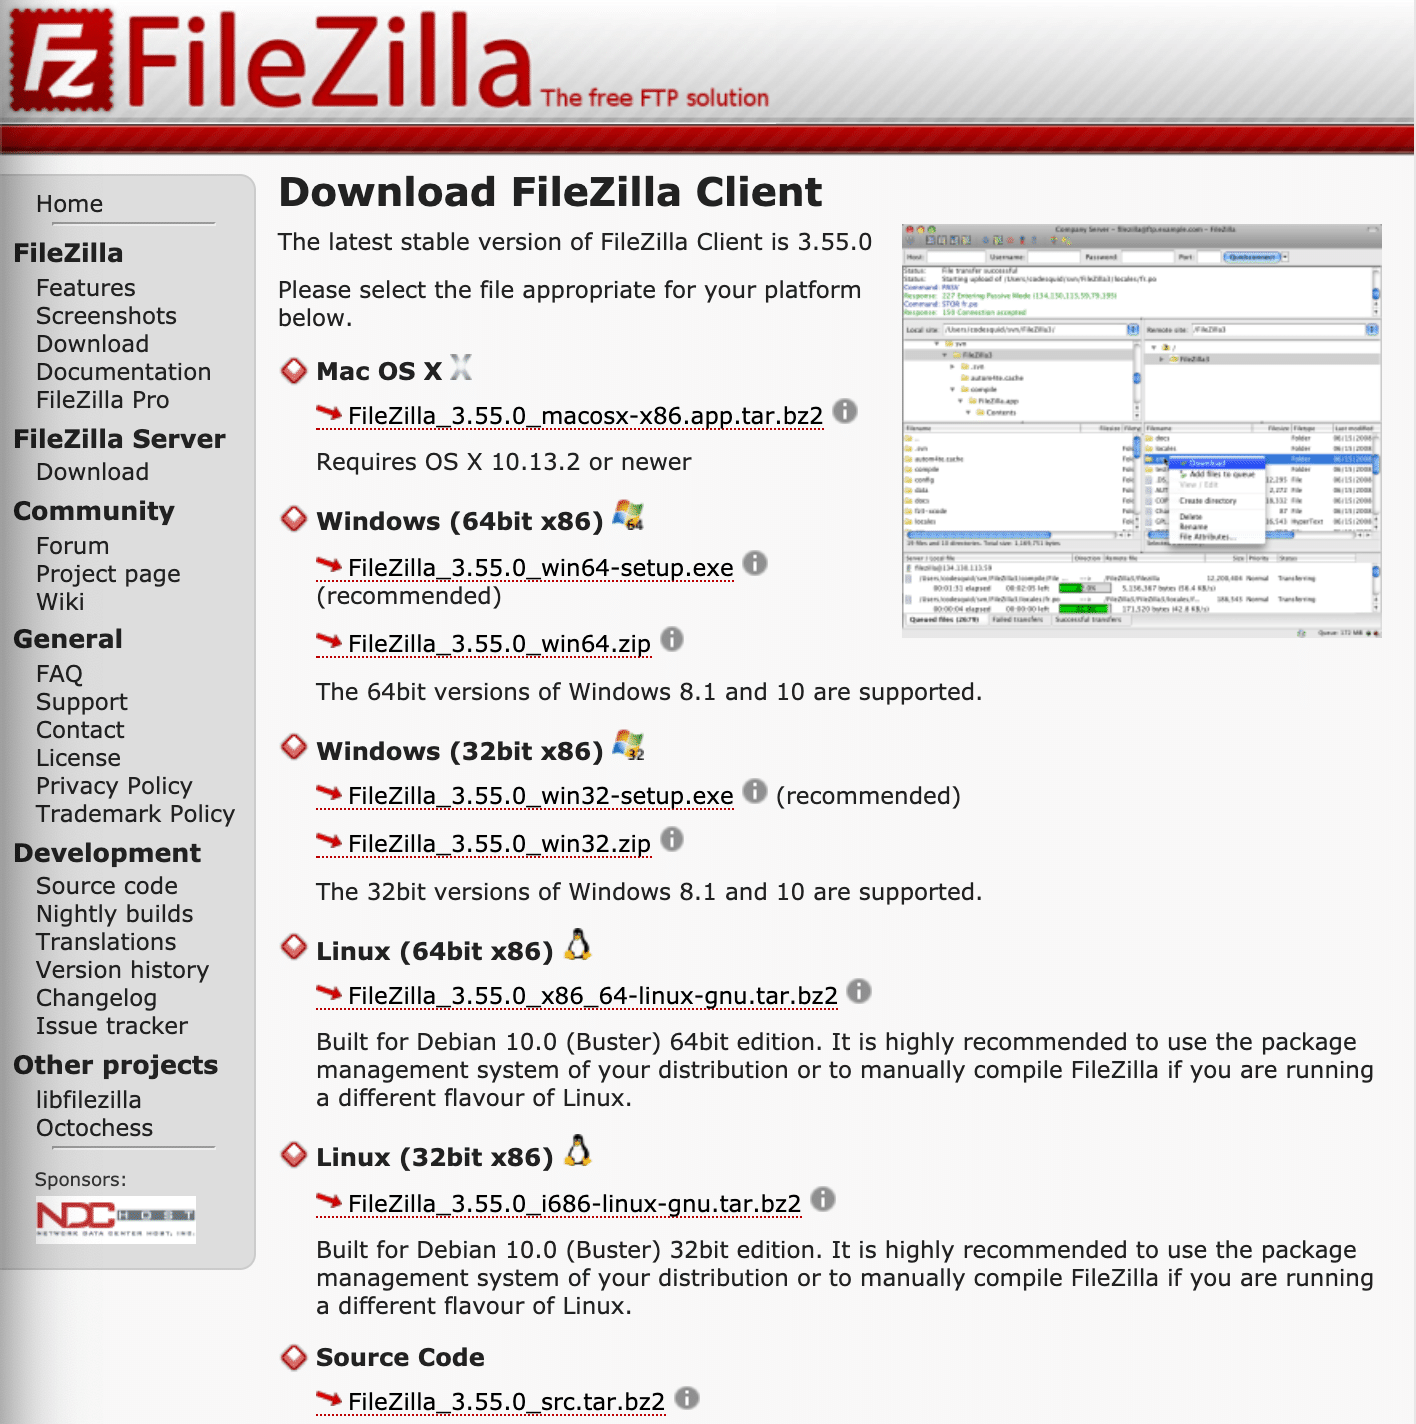 Een pagina met alle FileZilla versies en hun Download links.